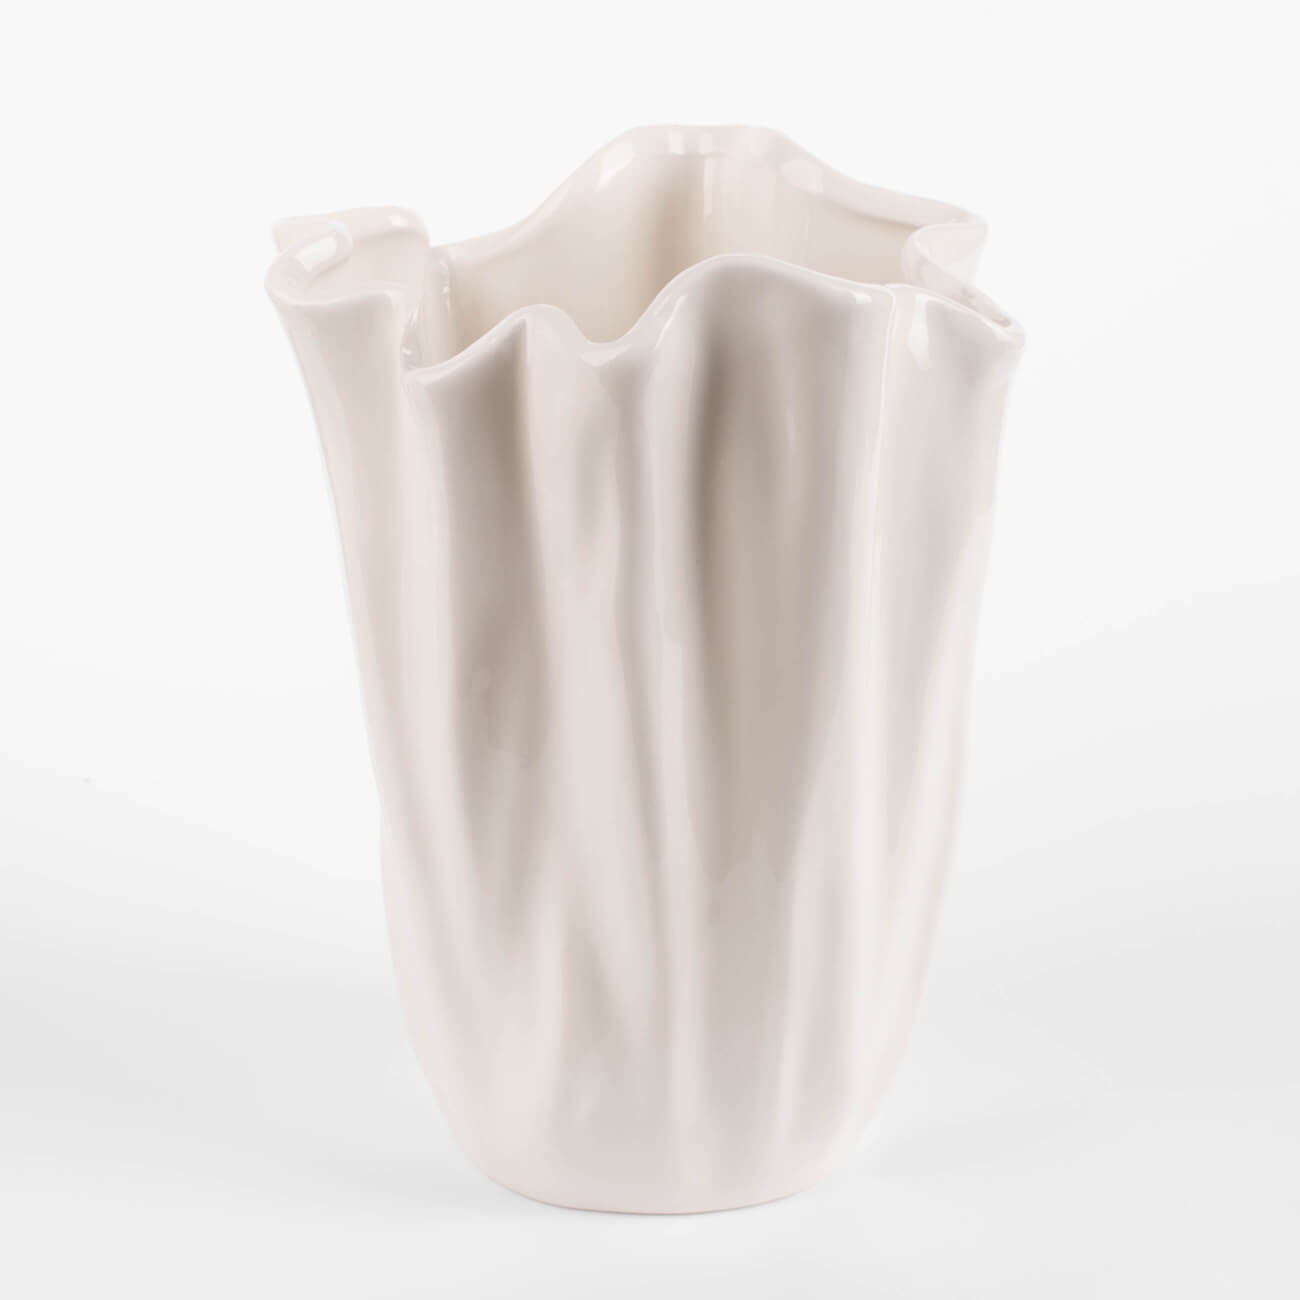 ваза для ов 24 см керамика белая мятый эффект crumple Ваза для цветов, 24 см, керамика, молочная, Мятый эффект, Crumple